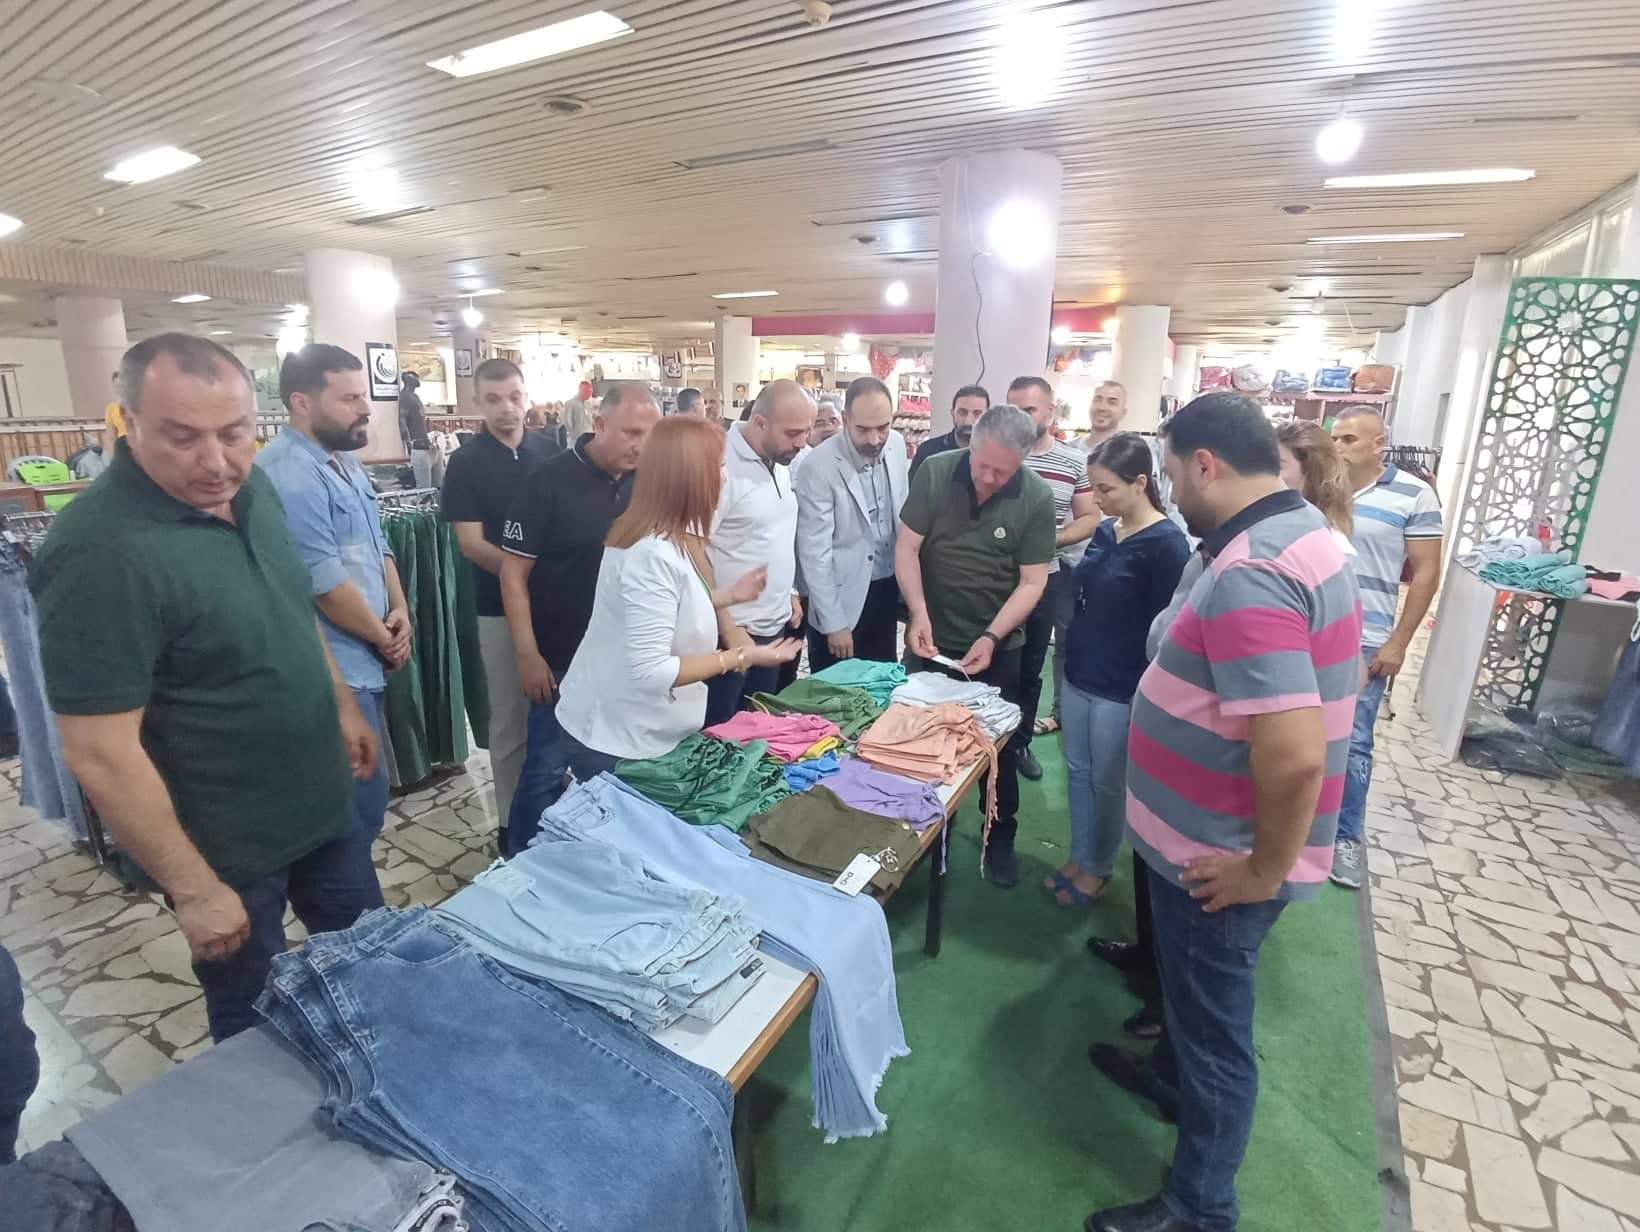 افتتاح سوق الخير في اللاذقية وجبلة استعداداً لعيد الأضحى المبارك (فيديو)